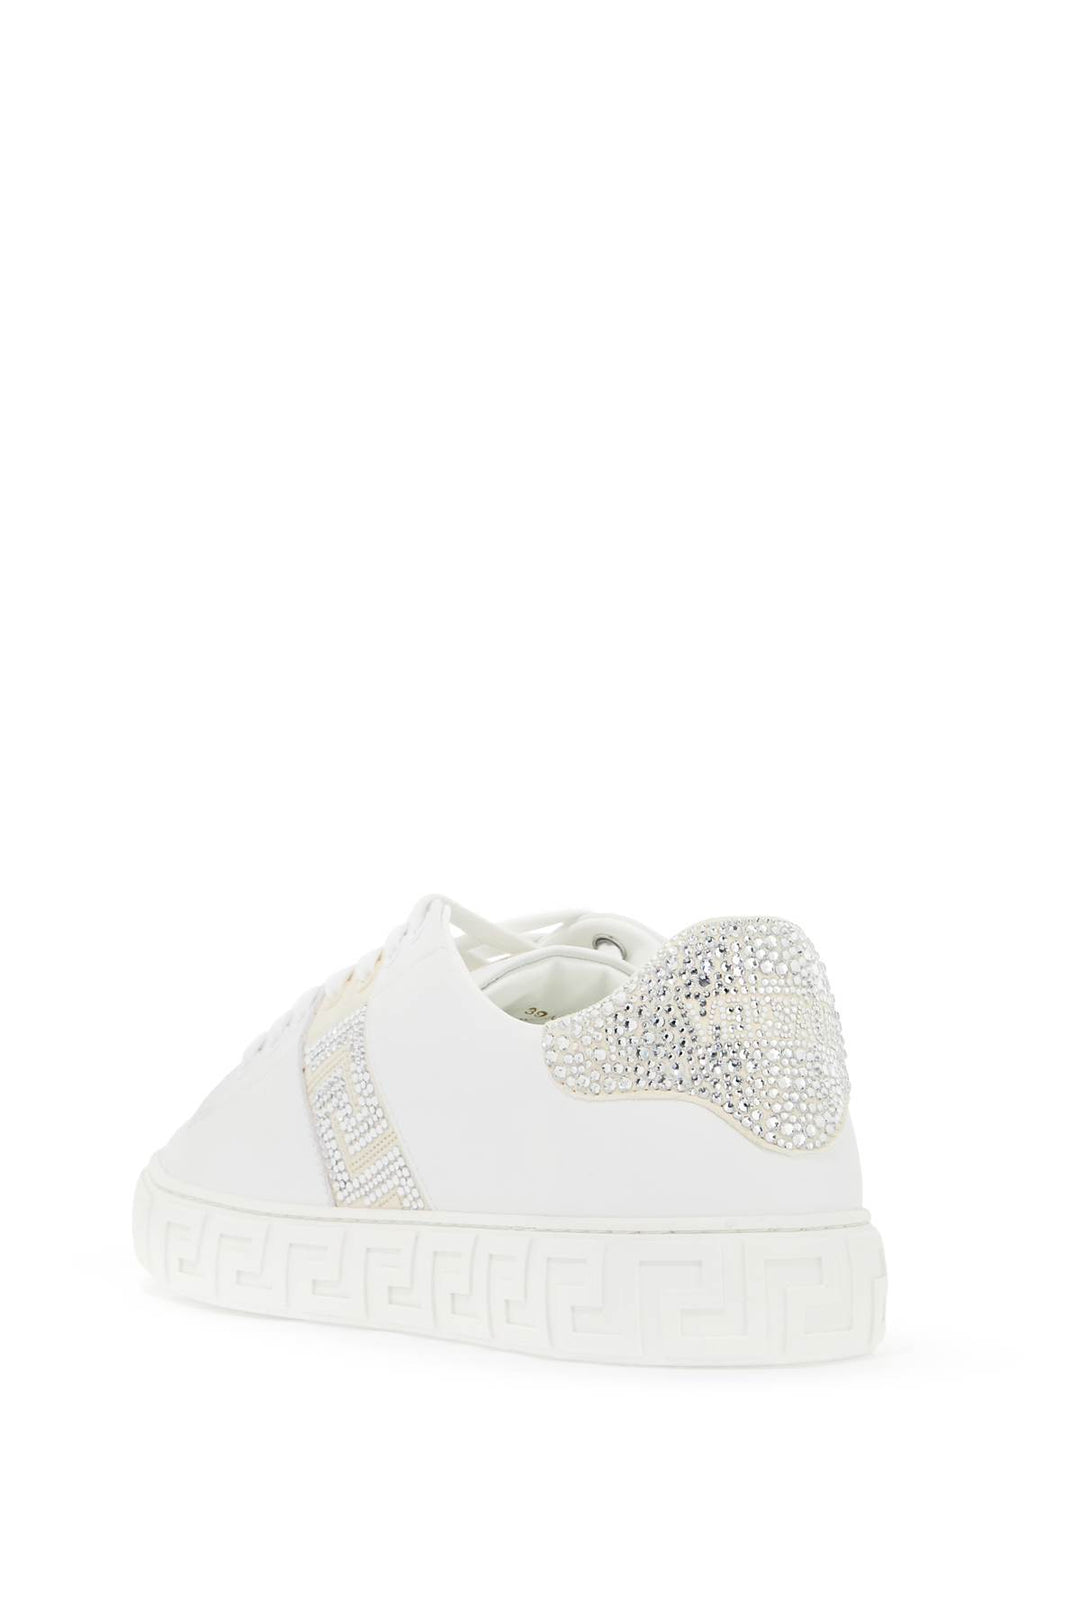 Versace Greca Crystal Sneakers   White